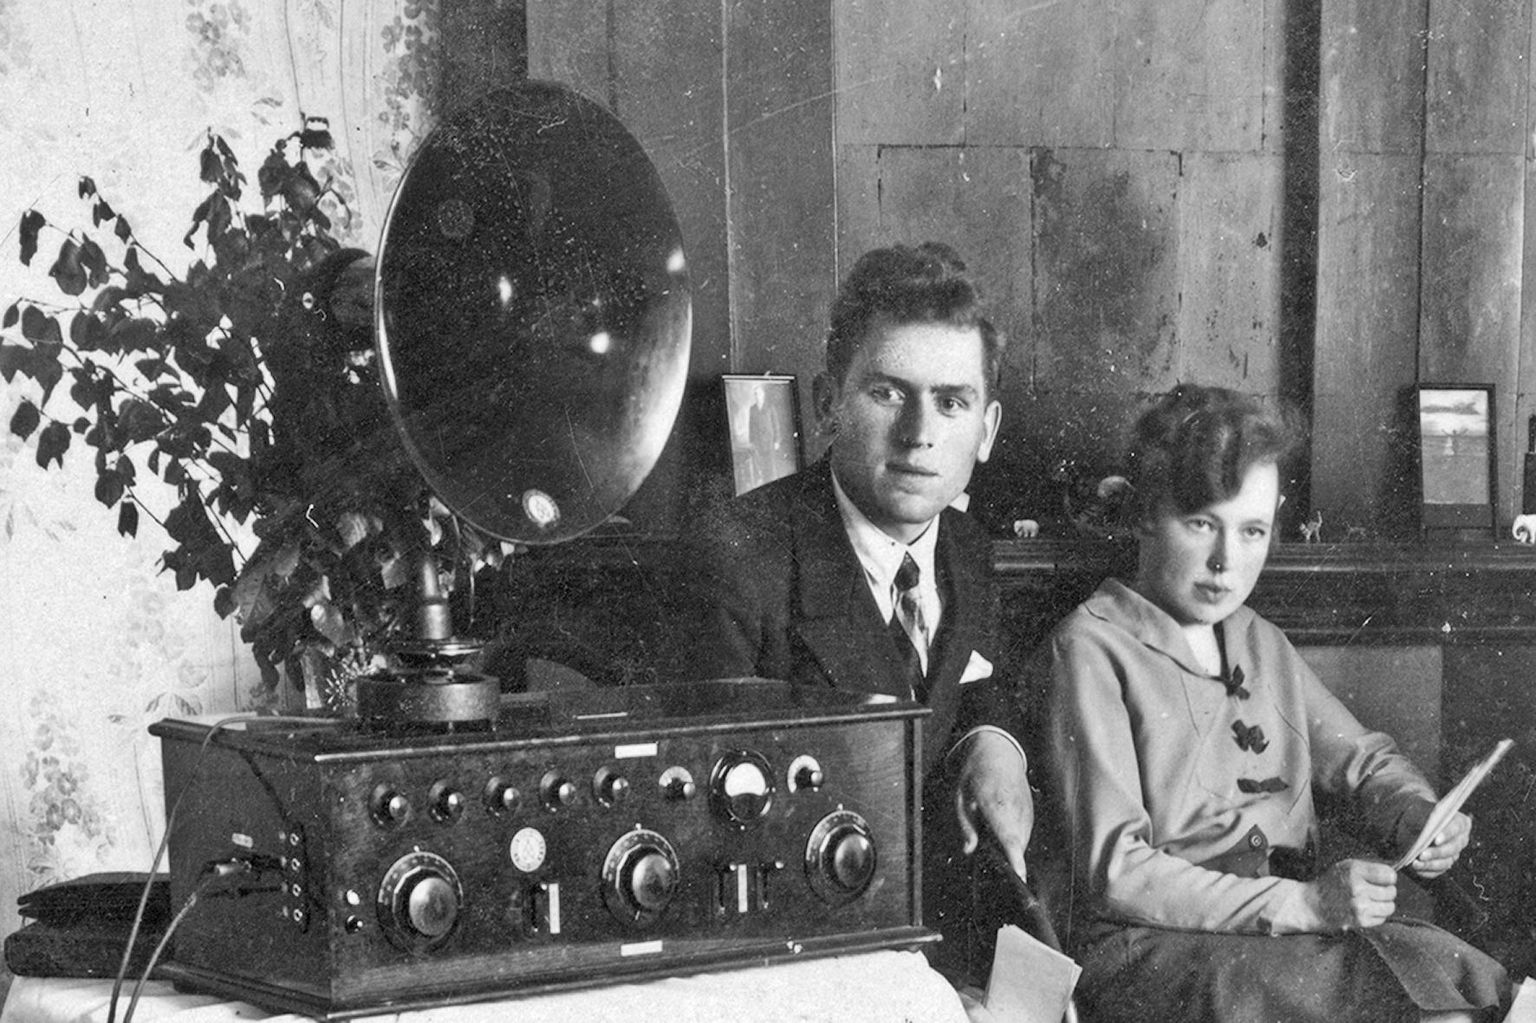 Kodumaise ringhäälingu algusaastatel kuulati saateid toruvaljuhääldiga. Raadiovastuvõtja on kõigi tunnuste järgi Tartu telefonivabriku 1920. aastate teise poole toodang.